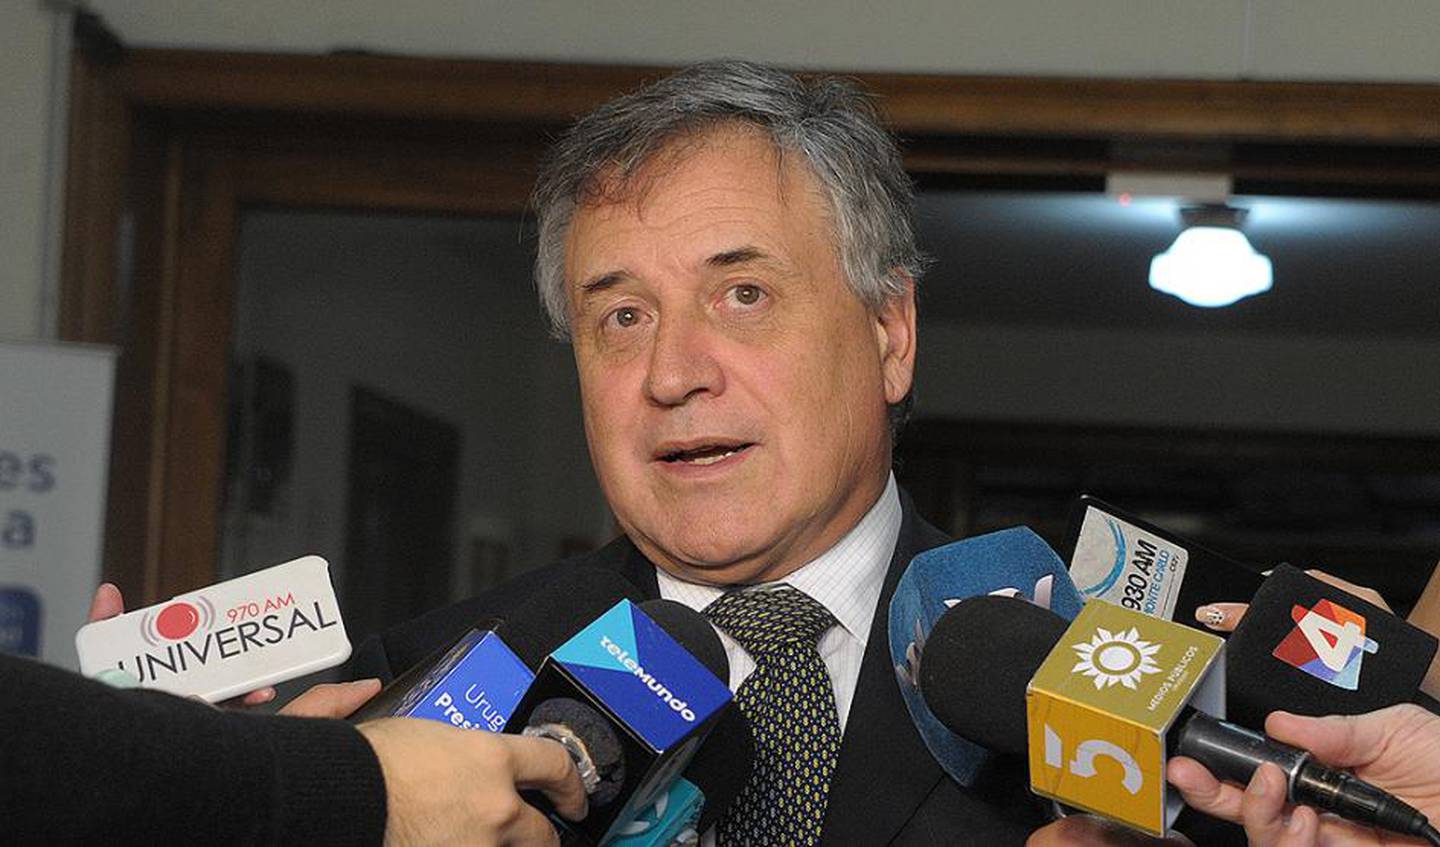 El ministro de Industria uruguayo habló sobre la reglamentación durante una comparecencia en el Parlamento. Foto: Presidencia de la República.